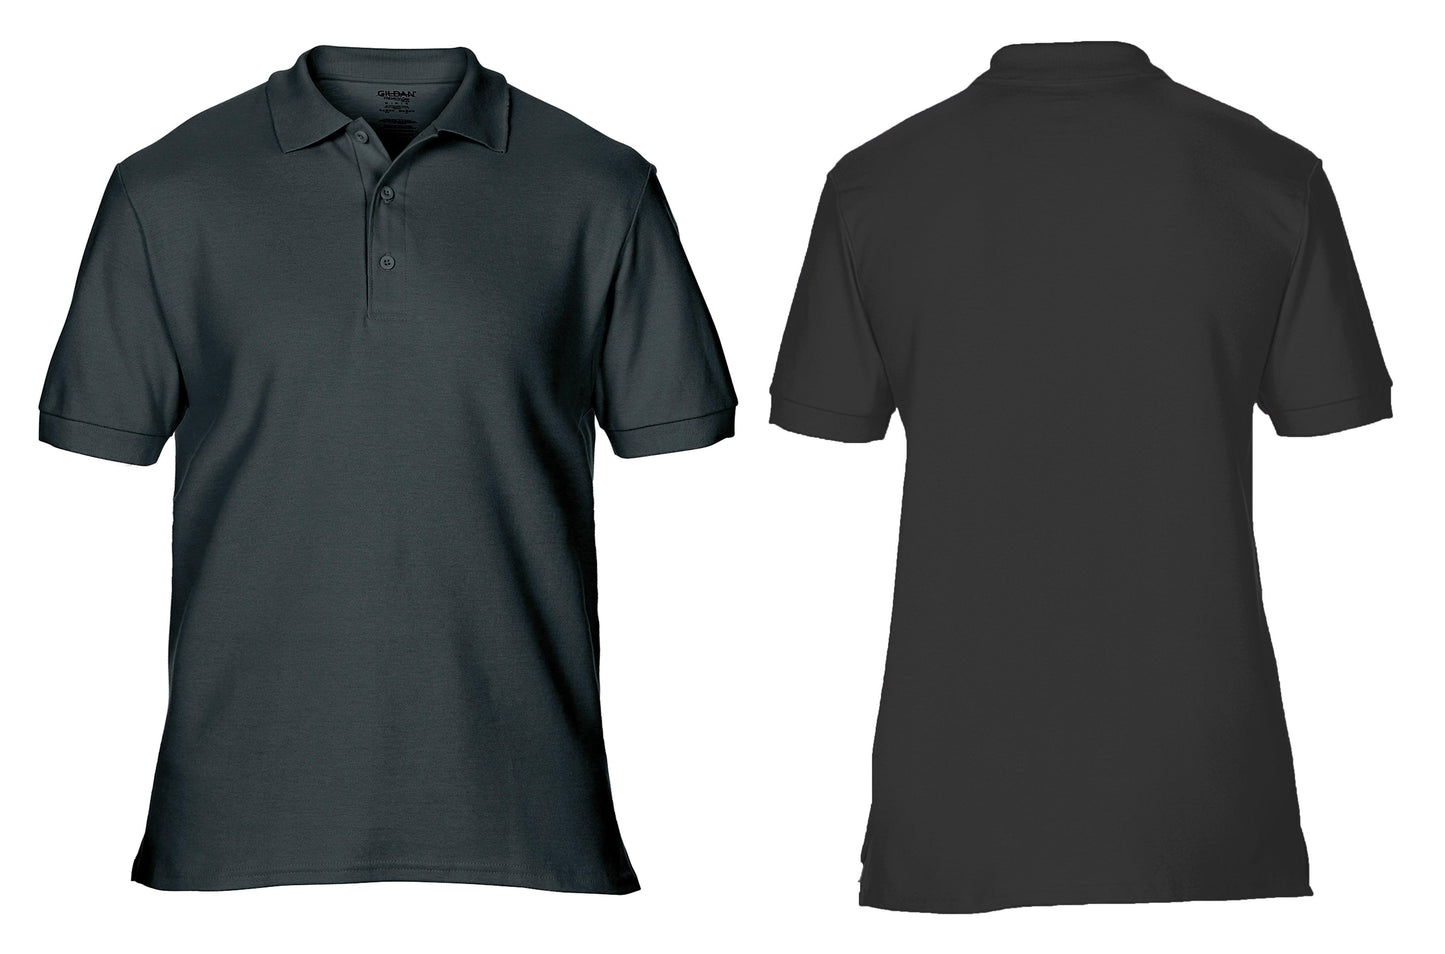 GD042 Premium Cotton® double piqué sport shirt colours - Trustsport